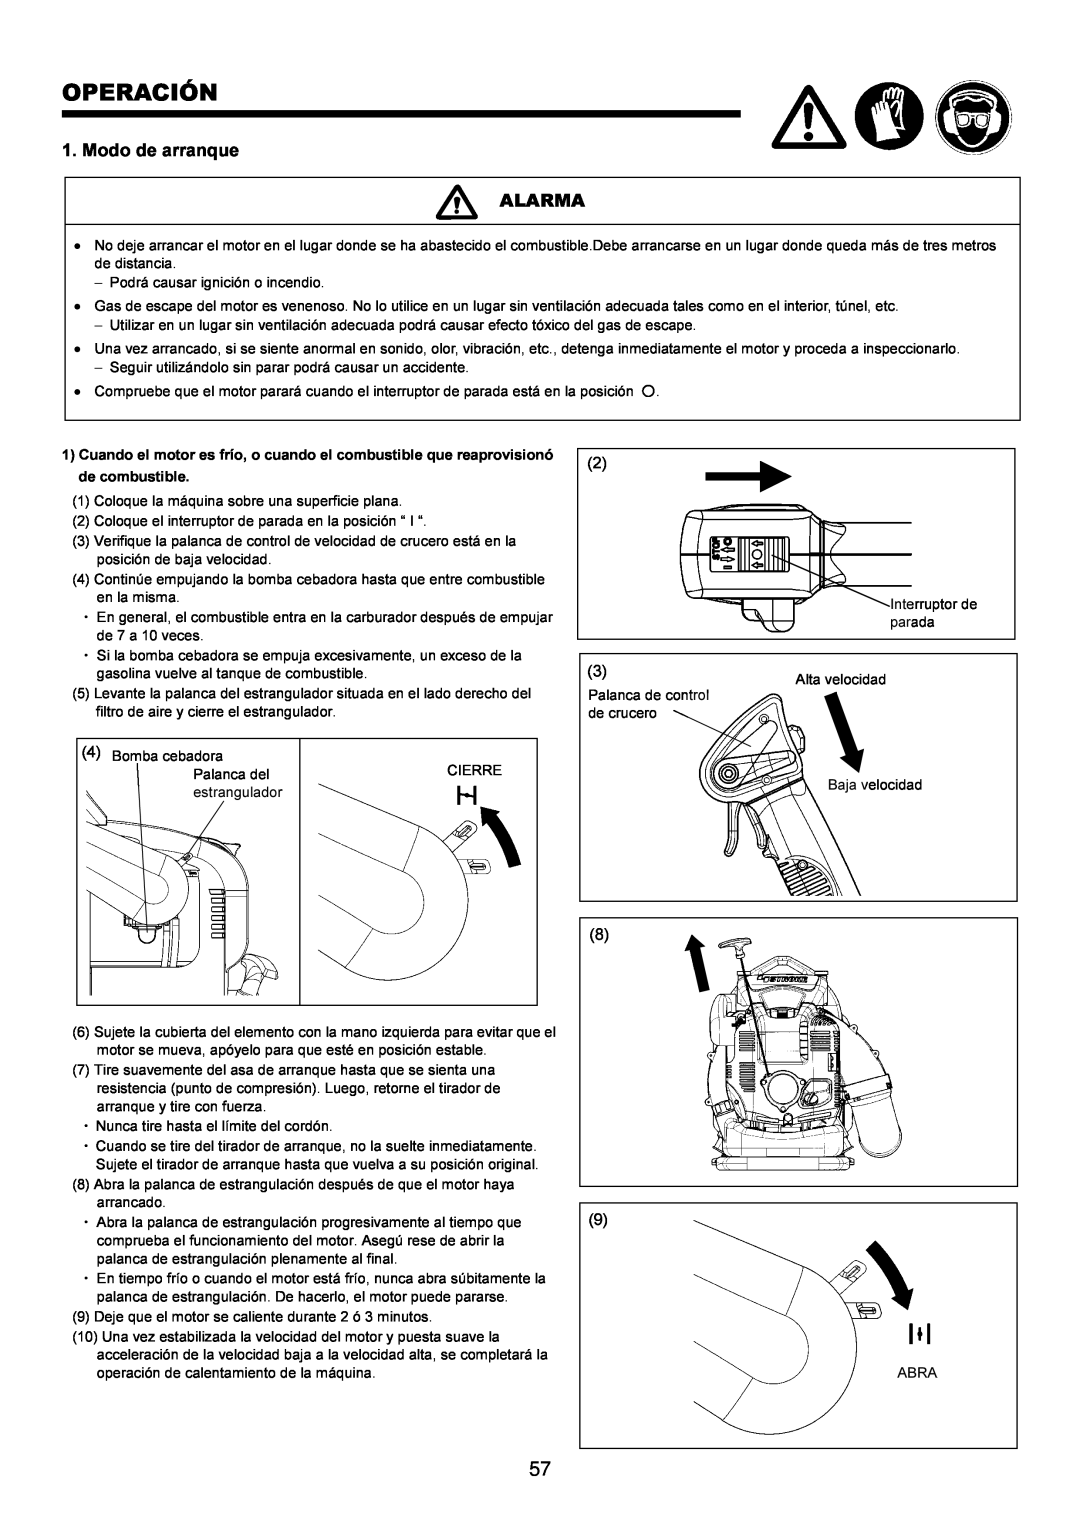 Makita BBX7600CA instruction manual Operación, Modo de arranque ALARMA 